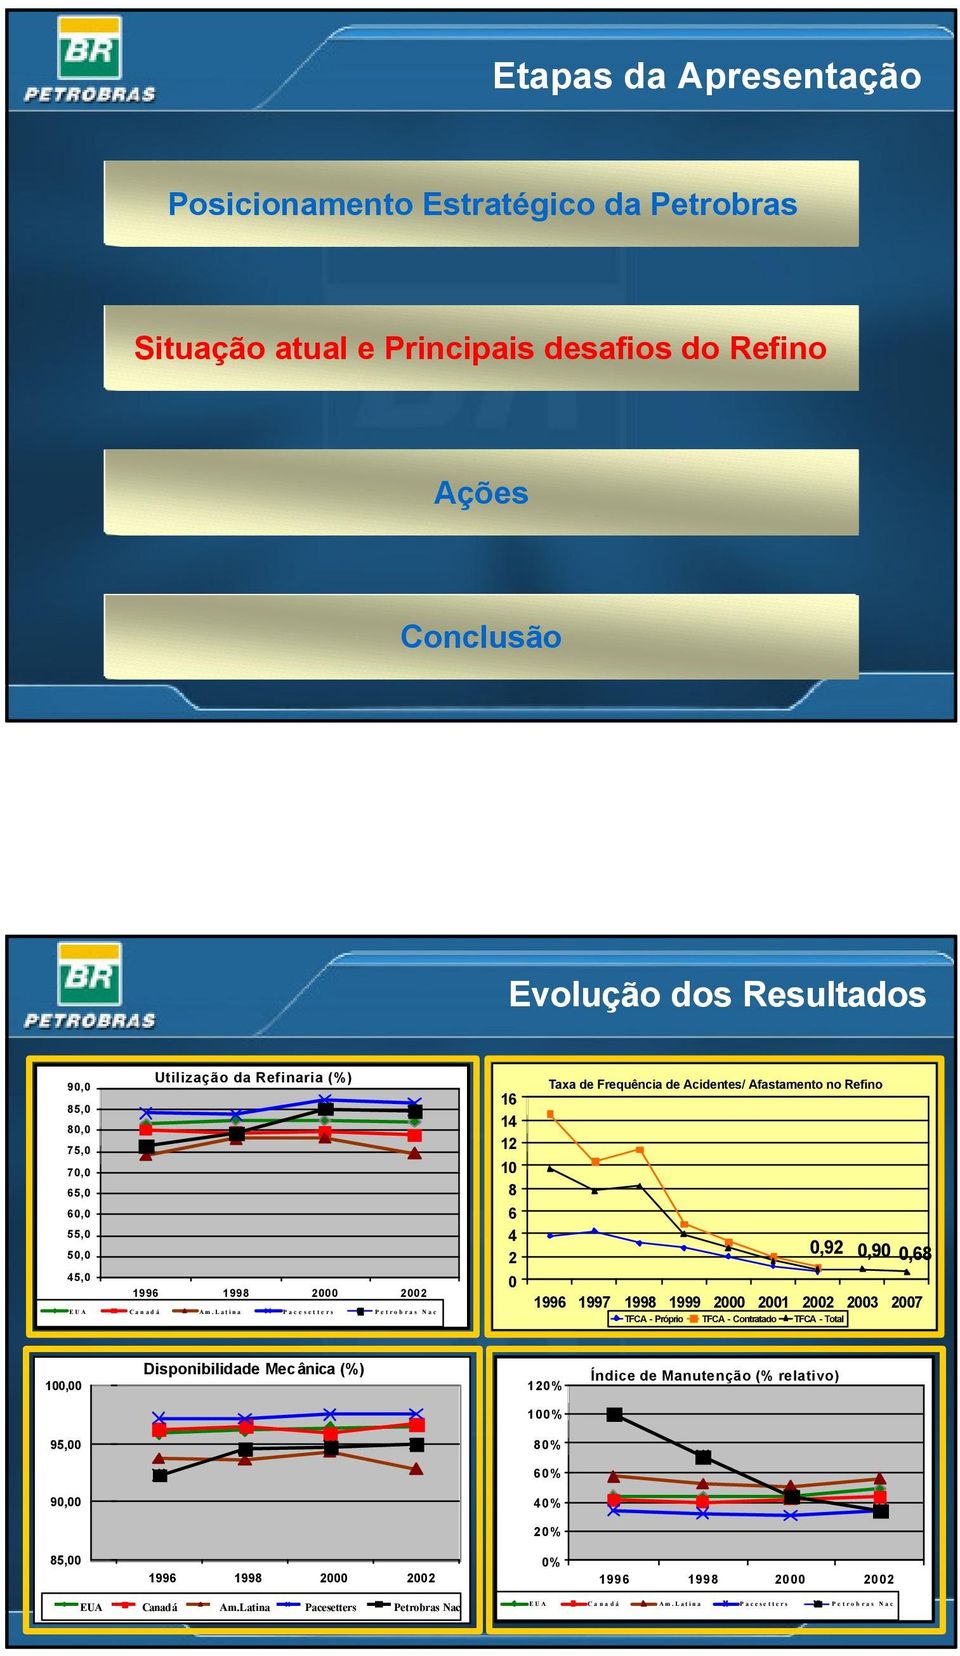 Latina Pacesetters Petrobras Nac 16 14 12 10 8 6 4 2 0 Taxa de Frequência de Acidentes/ Afastamento no Refino 0,92 0,90 0,68 1996 1997 1998 1999 2000 2001 2002 2003 2007 TFCA -